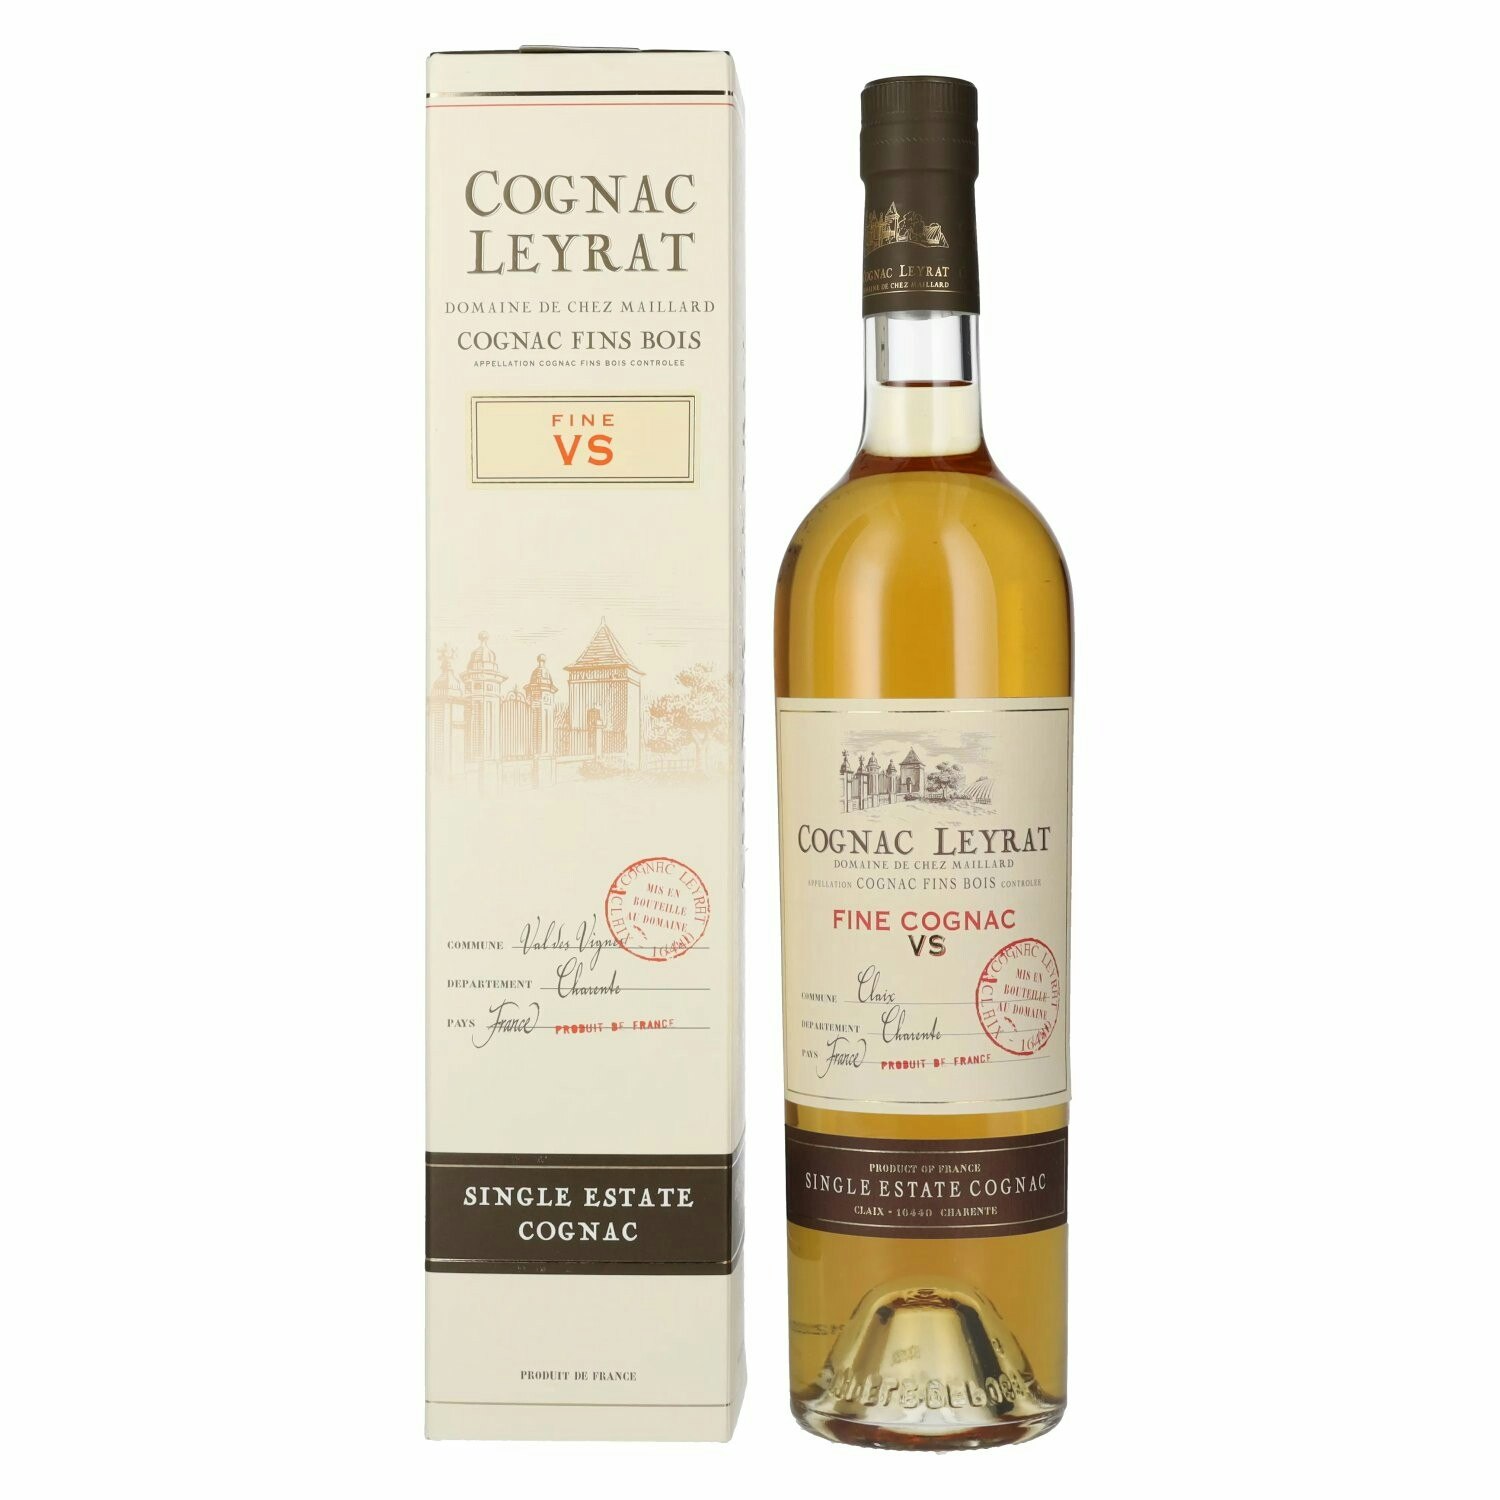 Cognac Leyrat VS Fine Single Estate Cognac 40% Vol. 0,7l in Giftbox